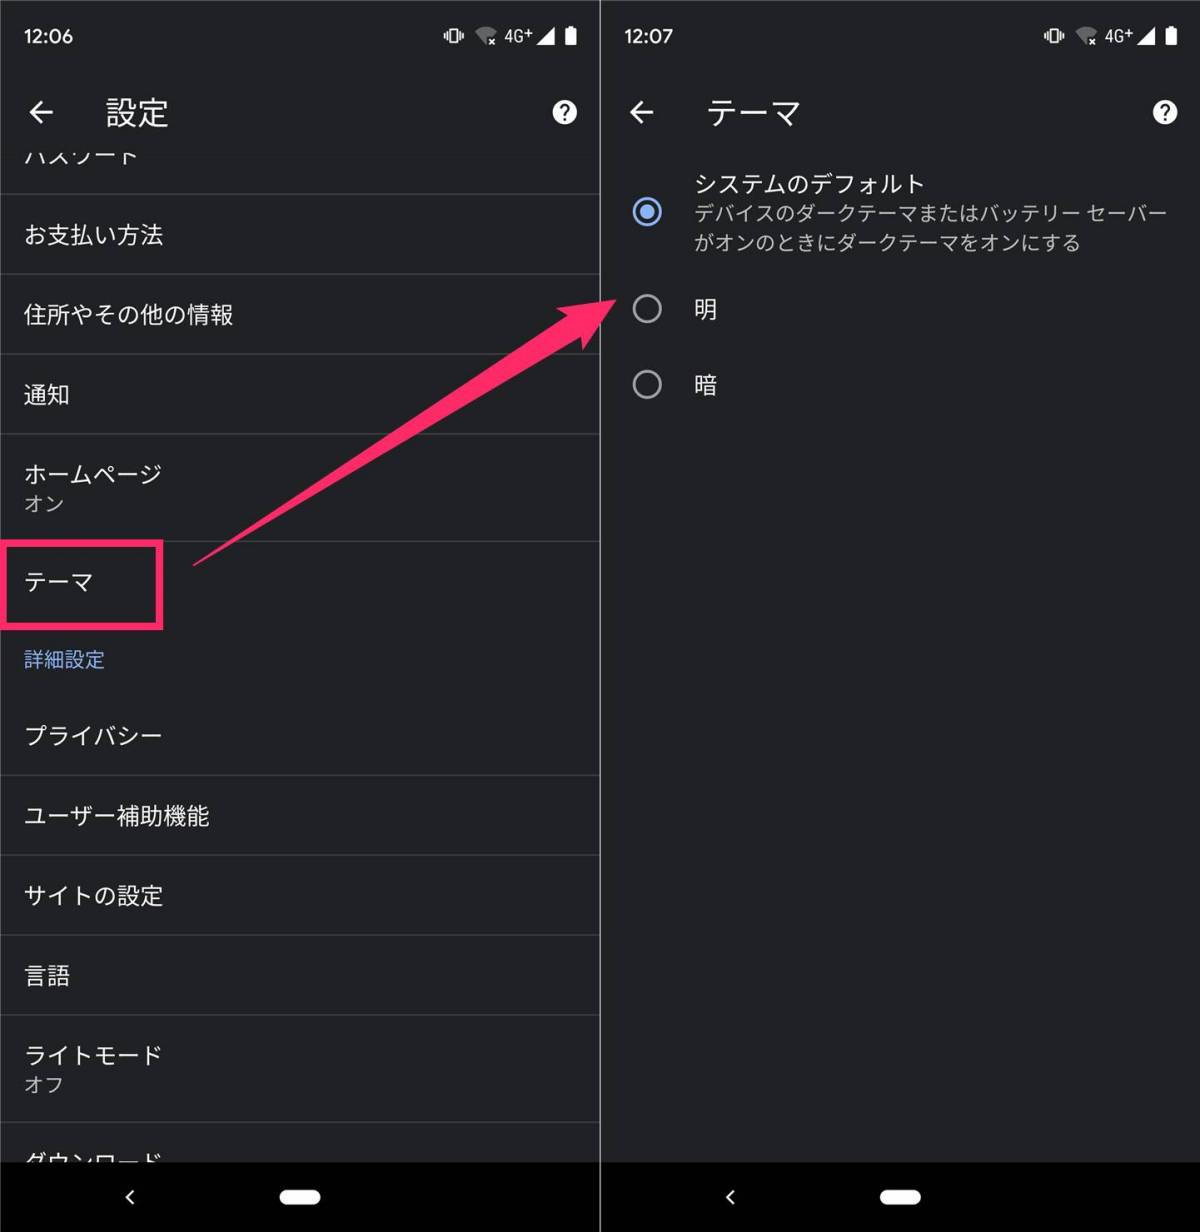 ダークモード 対応アプリ サービスまとめ Iphone Android Pc Appliv Topics